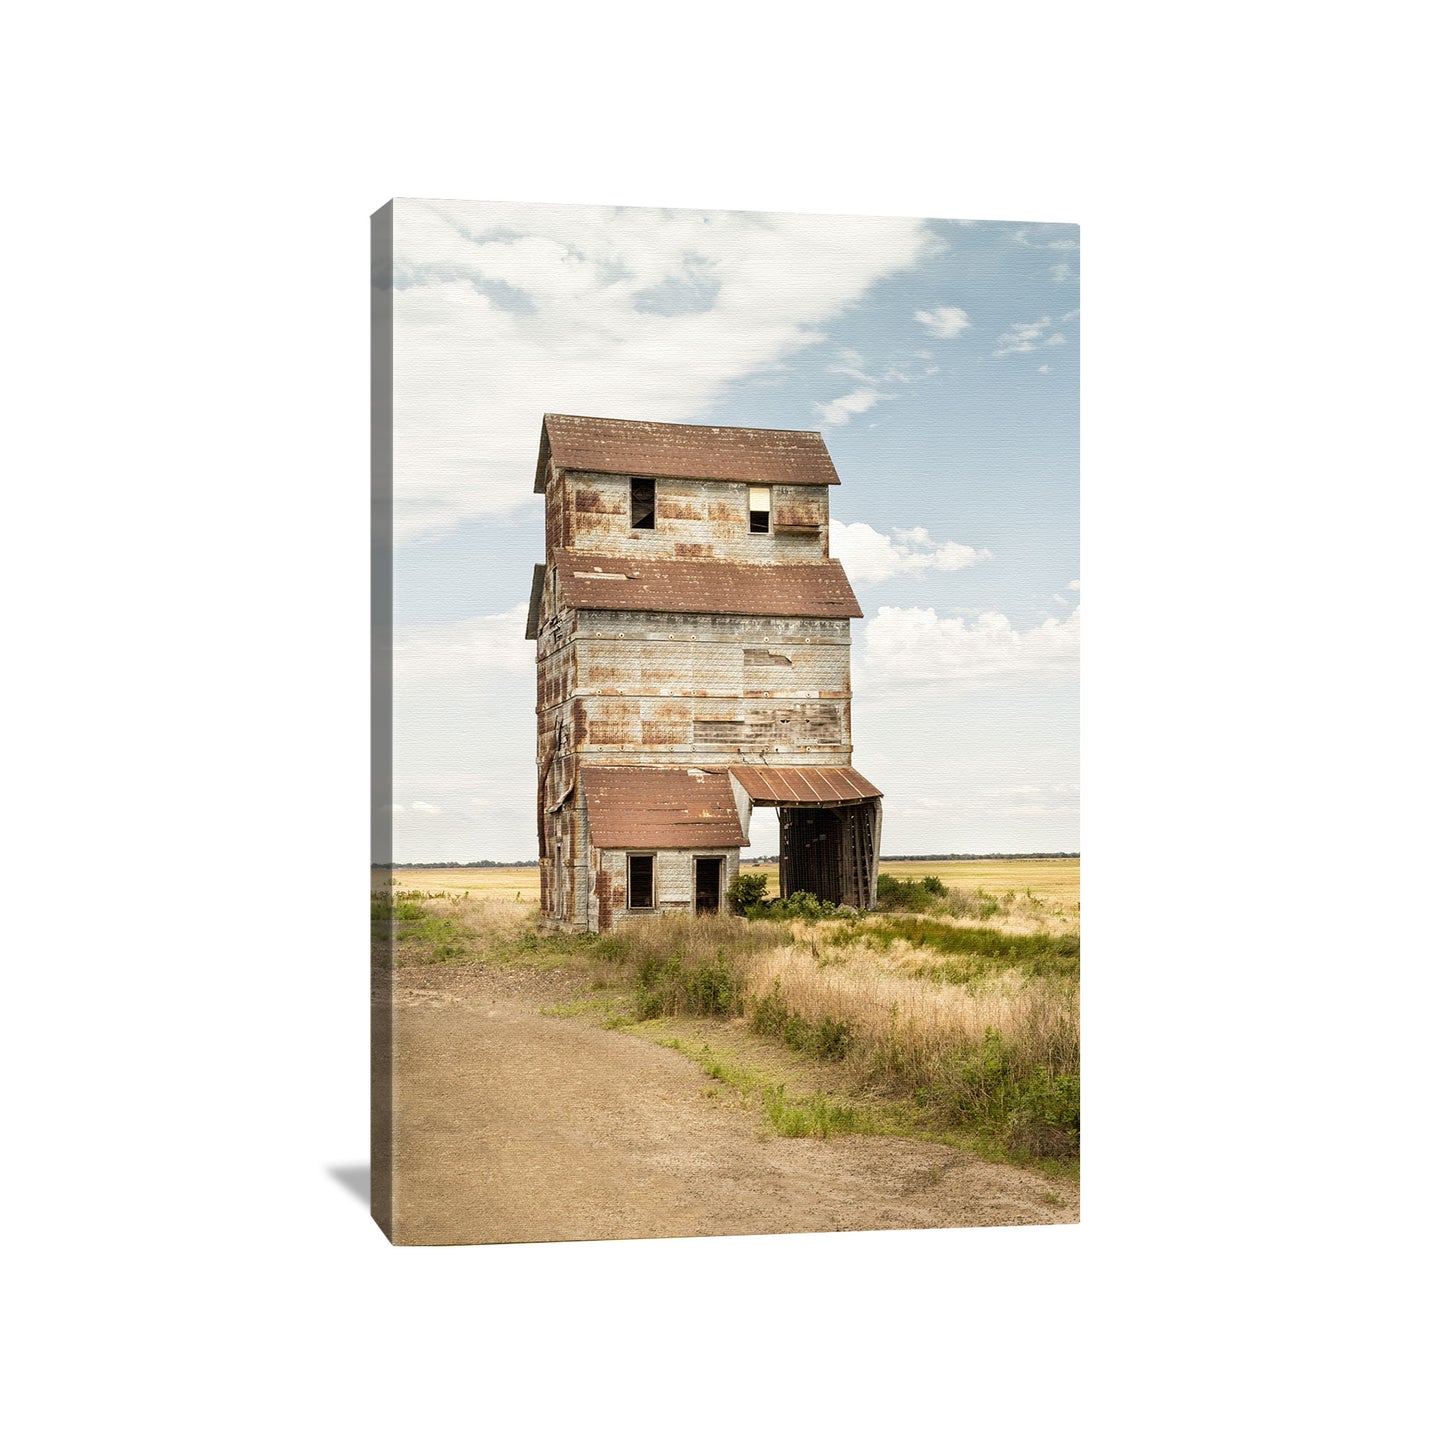 Modern farmhouse canvas print featuring an old Kansas grain elevator